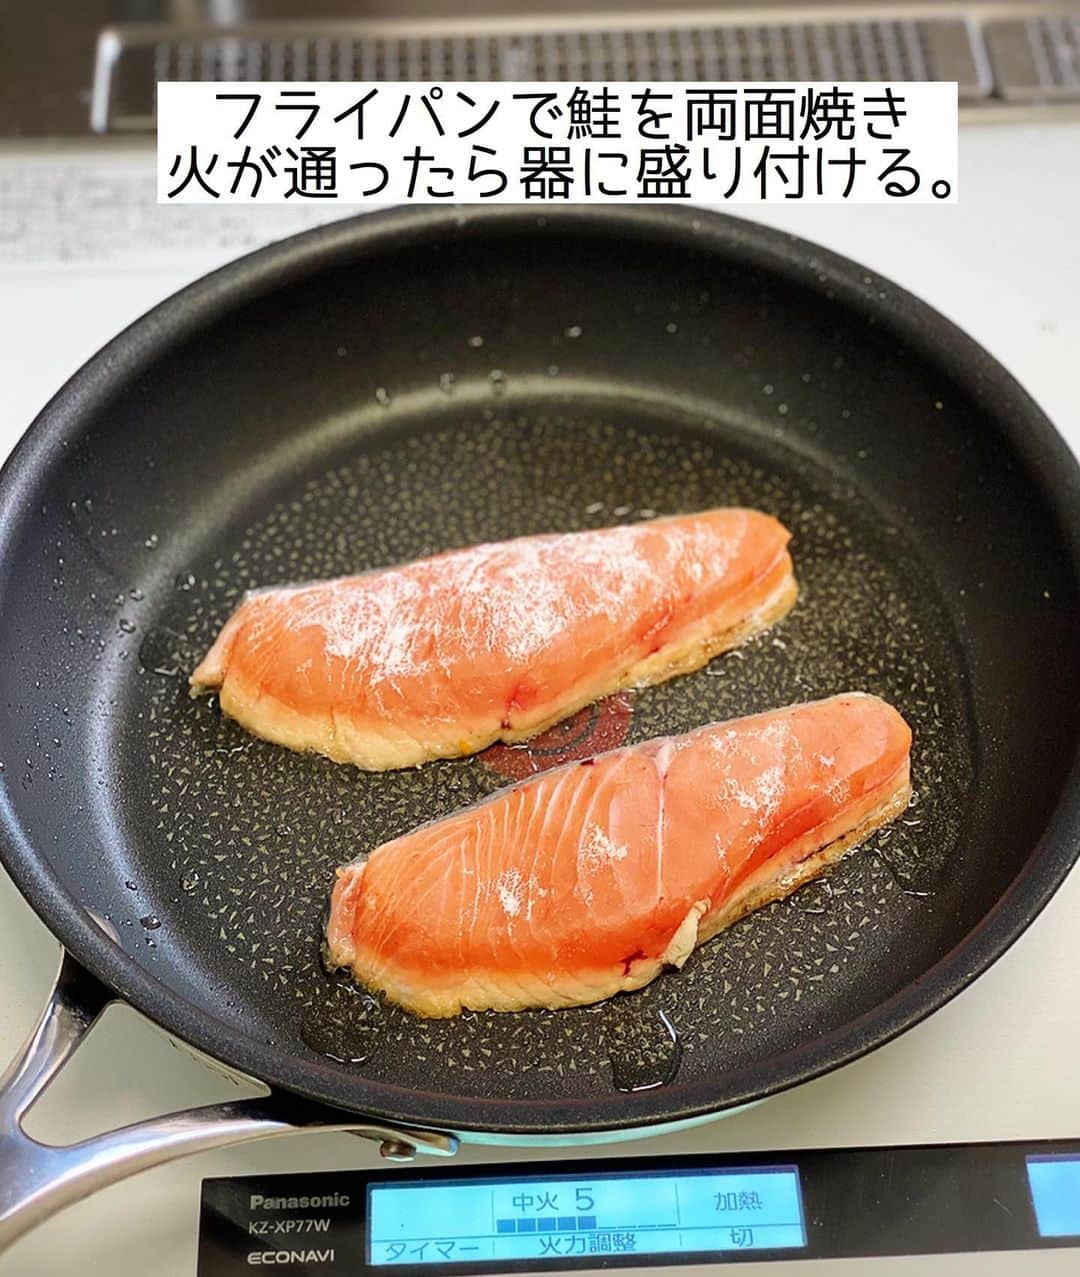 Mizuki【料理ブロガー・簡単レシピ】さんのインスタグラム写真 - (Mizuki【料理ブロガー・簡単レシピ】Instagram)「・﻿ 【#レシピ 】ーーーーーー﻿ ♡鮭の野菜あんかけ♡﻿ (2品献立提案あり)﻿ ーーーーーーーーーーーー﻿ ﻿ ﻿ ﻿ おはようございます(*^^*)﻿ ﻿ 昨日は#まる得マガジン をご覧下さり﻿ ありがとうございました🙇‍♀️﻿ 昨夜の［基本のパンケーキ］に続き﻿ 今夜はクッキーとスコーンです🍪﻿ これからアレンジが広がりますので﻿ よかったらご覧下さいね☺️💗﻿ ﻿ ﻿ ﻿ ﻿ さて、レシピです📕﻿ ﻿ 今日は秋色おかず☆﻿ ［鮭の野菜あんかけ］のご紹介です♩﻿ ﻿ フライパンで焼いた鮭に﻿ 野菜たっぷりの和風あんをかけました♡﻿ バランスよく食べられて﻿ ボリュームもアップしますよ〜(*´艸`)﻿ ﻿ フライパンひとつでできるので﻿ お気軽にお試し下さいね(*^^*)﻿ ﻿ ﻿ ﻿ ＿＿＿＿＿＿＿＿＿＿＿＿＿＿＿＿＿＿＿＿﻿ 【2人分】﻿ 生鮭...2切れ﻿ 片栗粉...適量﻿ 玉ねぎ...1/4個﻿ 人参...1/4本﻿ しいたけ...2枚﻿ サラダ油...大1﻿ ●水...150ml﻿ ●醤油・みりん...各大1.5﻿ ●片栗粉...小2﻿ ●和風だし...小1/4﻿ 万能ねぎ...適量﻿ ﻿ 1.鮭に片栗粉をまぶす。玉ねぎとしいたけは薄切りに、人参は細切りにする。●は合わせておく。﻿ 2.フライパンにサラダ油を中火で熱し、鮭を両面焼く。火が通ったら器に盛り付ける。﻿ 3.そのままのフライパンを中火で熱し、1の野菜を炒める。しんなりしたら●をもう一度混ぜてから加え、混ぜながらとろみをつける。﻿ 4.2に3をかけ、小口切りにしたねぎをのせる。﻿ ￣￣￣￣￣￣￣￣￣￣￣￣￣￣￣￣￣￣￣￣﻿ ﻿ ﻿ ﻿ 《ポイント》﻿ ♦︎野菜はアレンジOK♩長ねぎやしめじ、ピーマンなどもよく合います♩﻿ ﻿ ﻿ ﻿ ﻿ ﻿ ﻿ ＿＿＿＿＿＿＿＿＿＿＿＿＿＿＿﻿ 🥣🥣🥣2品献立提案🥣🥣🥣﻿ ￣￣￣￣￣￣￣￣￣￣￣￣￣￣￣﻿ 【合間に作れるおすすめ副菜】﻿ >厚揚げのねぎおかかチーズ(P.86)﻿ >ブロッコリーと卵のおかかマヨ和え(P.93)﻿ (#Mizukiの2品献立 より)﻿ ﻿ 【献立の段取り】﻿ 副菜の加熱を始めてから、メインを焼く🥢﻿ ﻿ ﻿ ﻿ ﻿ ﻿ ﻿ ﻿ ⭐️発売中⭐️3刷重版が決まりました😭﻿ 本当にありがとうございます(涙)﻿ _____________________________________﻿ \15分でいただきます/﻿ 📕#Mizukiの2品献立 📕﻿ (9月24日発売・マガジンハウス)﻿ ￣￣￣￣￣￣￣￣￣￣￣￣￣￣￣￣￣﻿ ﻿ 忙しい私たちには﻿ 2品くらいがちょうどいい！﻿ 『しんどくない献立、考えました』﻿ ￣￣￣￣￣￣￣￣￣￣￣￣￣￣￣￣﻿ ﻿ ーーーーーPART.1 ーーーーー﻿ 【Mizukiのお墨つき！２品献立ベスト10】﻿ 約15分でできる10献立をご紹介！﻿ メインは全部フライパン、副菜はレンチンor混ぜるだけ♡﻿ ﻿ ーーーーーPART.2 ーーーーー﻿ 【フライパンひとつ！今夜のメインおかず】﻿ 献立の主役になる肉や魚のおかず50品！﻿ Part3の副菜と組み合わせれば﻿ 献立のバリエーションが広がりますよ♩﻿ ﻿ ーーーーー PART.3 ーーーーー﻿ 【合間に作れる！ 野菜別かんたん副菜】﻿ レンチンor和えるだけの副菜レシピを﻿ 素材別にたっぷり収録♩﻿ ﻿ ーーーーー番外編ーーーーー﻿ 【ひとつで満足！ご飯＆麺】﻿ 【具だくさん！おかずスープ】﻿ 【オーブンいらずのおやつレシピ】﻿ ￣￣￣￣￣￣￣￣￣￣￣￣￣￣￣￣￣￣﻿ (ハイライトにリンク🔗あります💗)﻿ ﻿ ﻿ ﻿ ﻿ ＿＿＿＿＿＿＿＿＿＿＿＿＿＿＿＿＿＿﻿ 🔔テレビ出演のお知らせ🔔﻿ 10月5日より2週間(月〜木)﻿ 【NHK Eテレ #まる得マガジン 】に﻿ 講師として出演させていただきます☺️﻿ 俳優の武田航平さん﻿ (@kouhei_takeda.official )と一緒に﻿ 絶品おやつから意外なランチまで﻿ たくさん作らせていただきますよ♩﻿ ﻿ ＊NHKテキスト発売中です📕﻿ ￣￣￣￣￣￣￣￣￣￣￣￣￣￣￣￣￣￣﻿ ﻿ ﻿ ﻿ ﻿ ﻿ レシピを作って下さった際や﻿ レシピ本についてのご投稿には﻿ タグ付け( @mizuki_31cafe )して﻿ お知らせいただけると嬉しいです😊💕﻿ ﻿ ﻿ ﻿ ﻿ ﻿ ﻿ #鮭#魚#野菜#あんかけ#Mizuki#簡単レシピ#時短レシピ#節約レシピ#料理#フーディーテーブル#マカロニメイト#おうちごはん#デリスタグラマー#料理好きな人と繋がりたい#料理記録#おうちごはんlover#写真好きな人と繋がりたい#foodpic#cooking#recipe#lin_stagrammer#foodporn#yummy#f52grams#鮭の和風あんかけm」10月6日 7時13分 - mizuki_31cafe